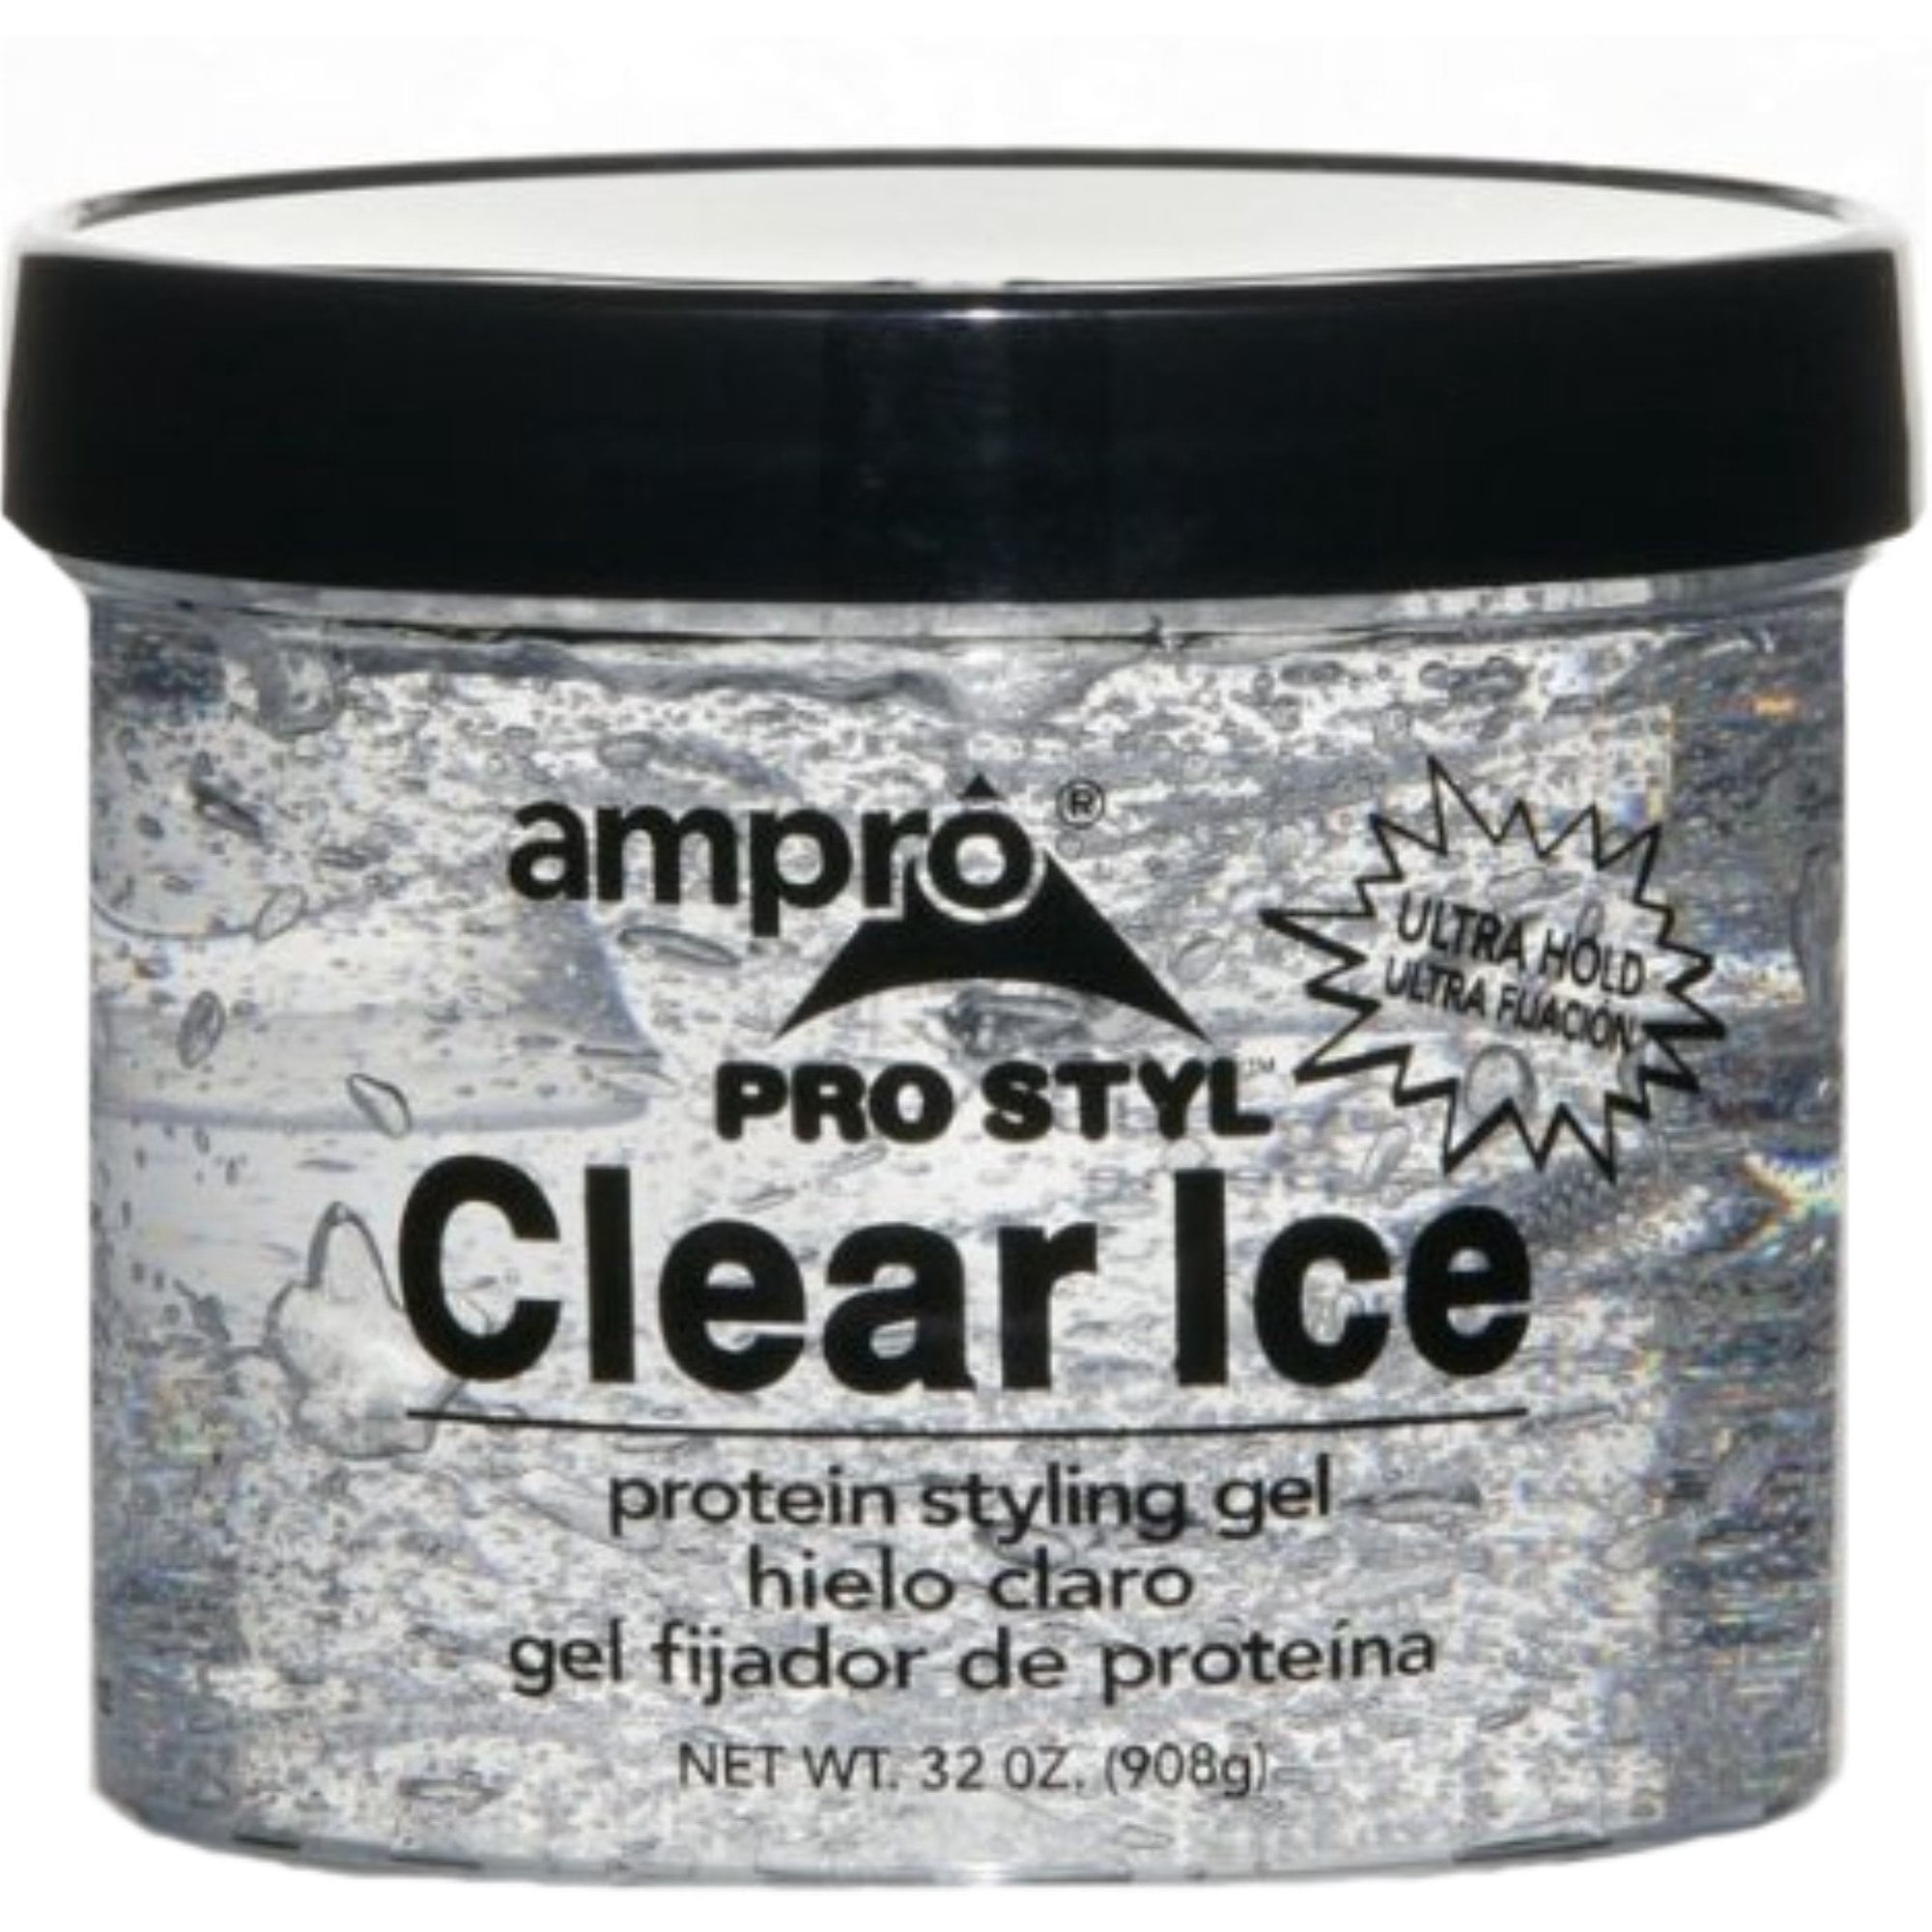 Ampro Clear Ice Styling Gel 32 Oz Beauty Talk La